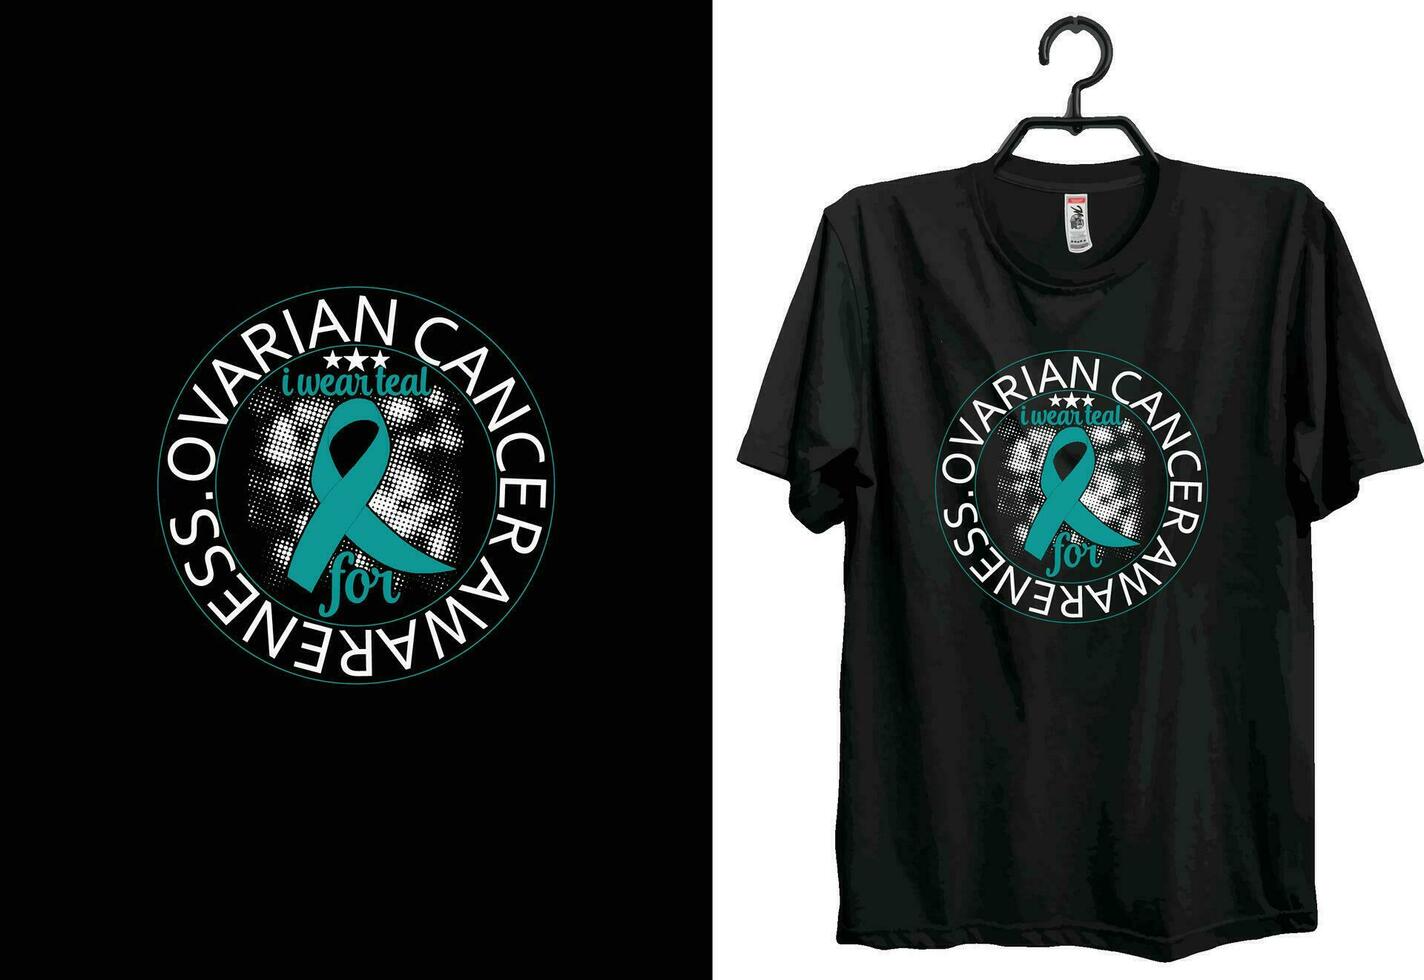 äggstockar cancer t-shirt design. typografi t-shirt design. beställnings- t-shirt design. värld cancer t-shirt design vektor